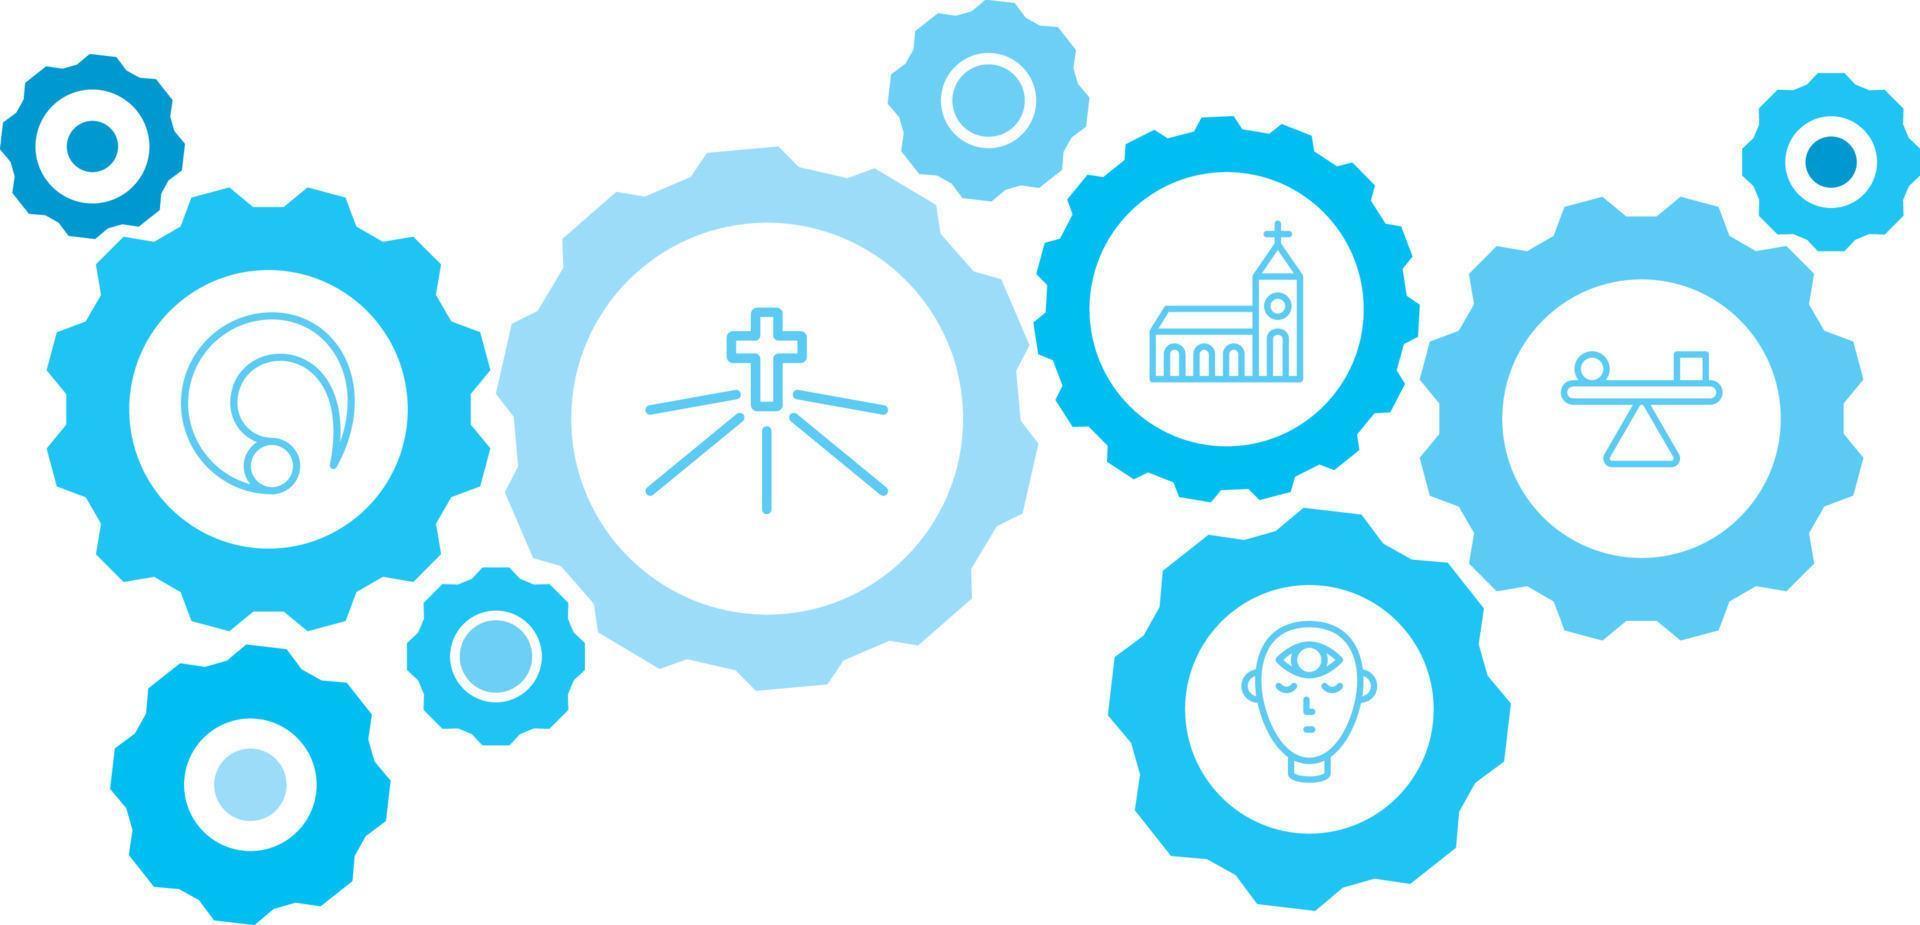 balans symbol vektor ikon blå redskap uppsättning. abstrakt bakgrund med ansluten kugghjul och ikoner för logistik, service, frakt, distribution, transport, marknadsföra, kommunicera begrepp på vit bakgrund